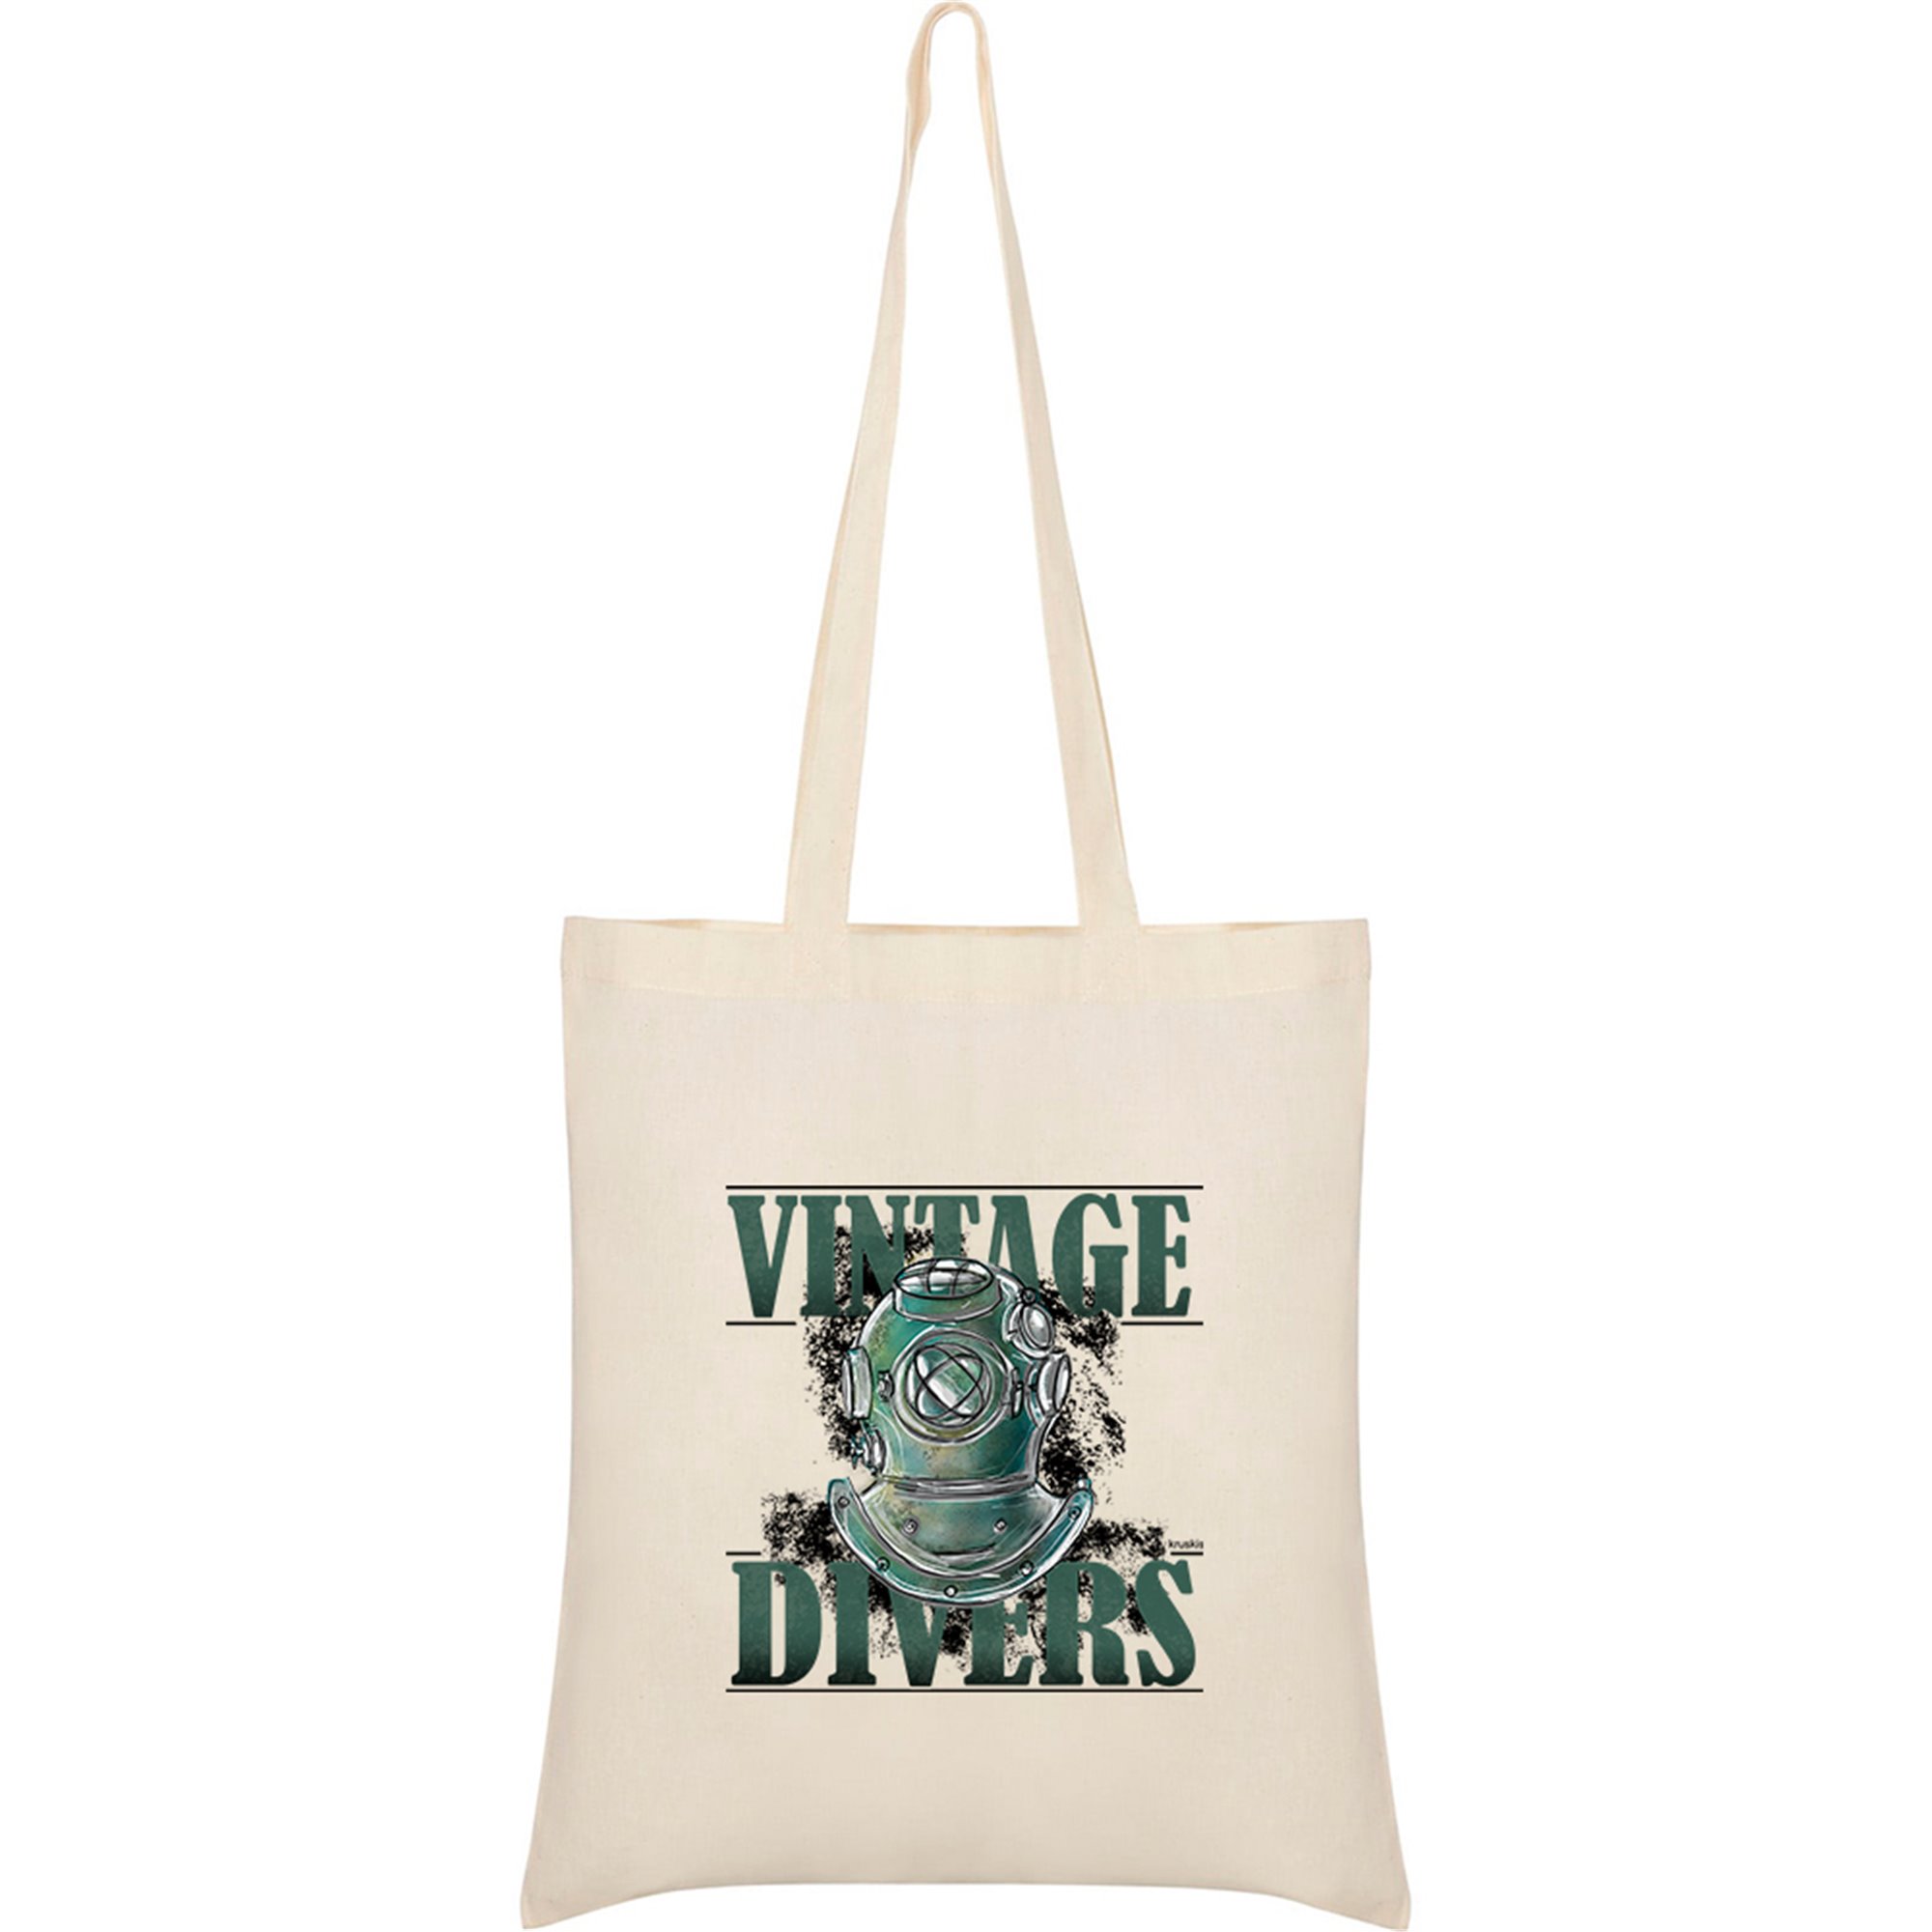 Tasche Baumwolle Tauchen Vintage Divers